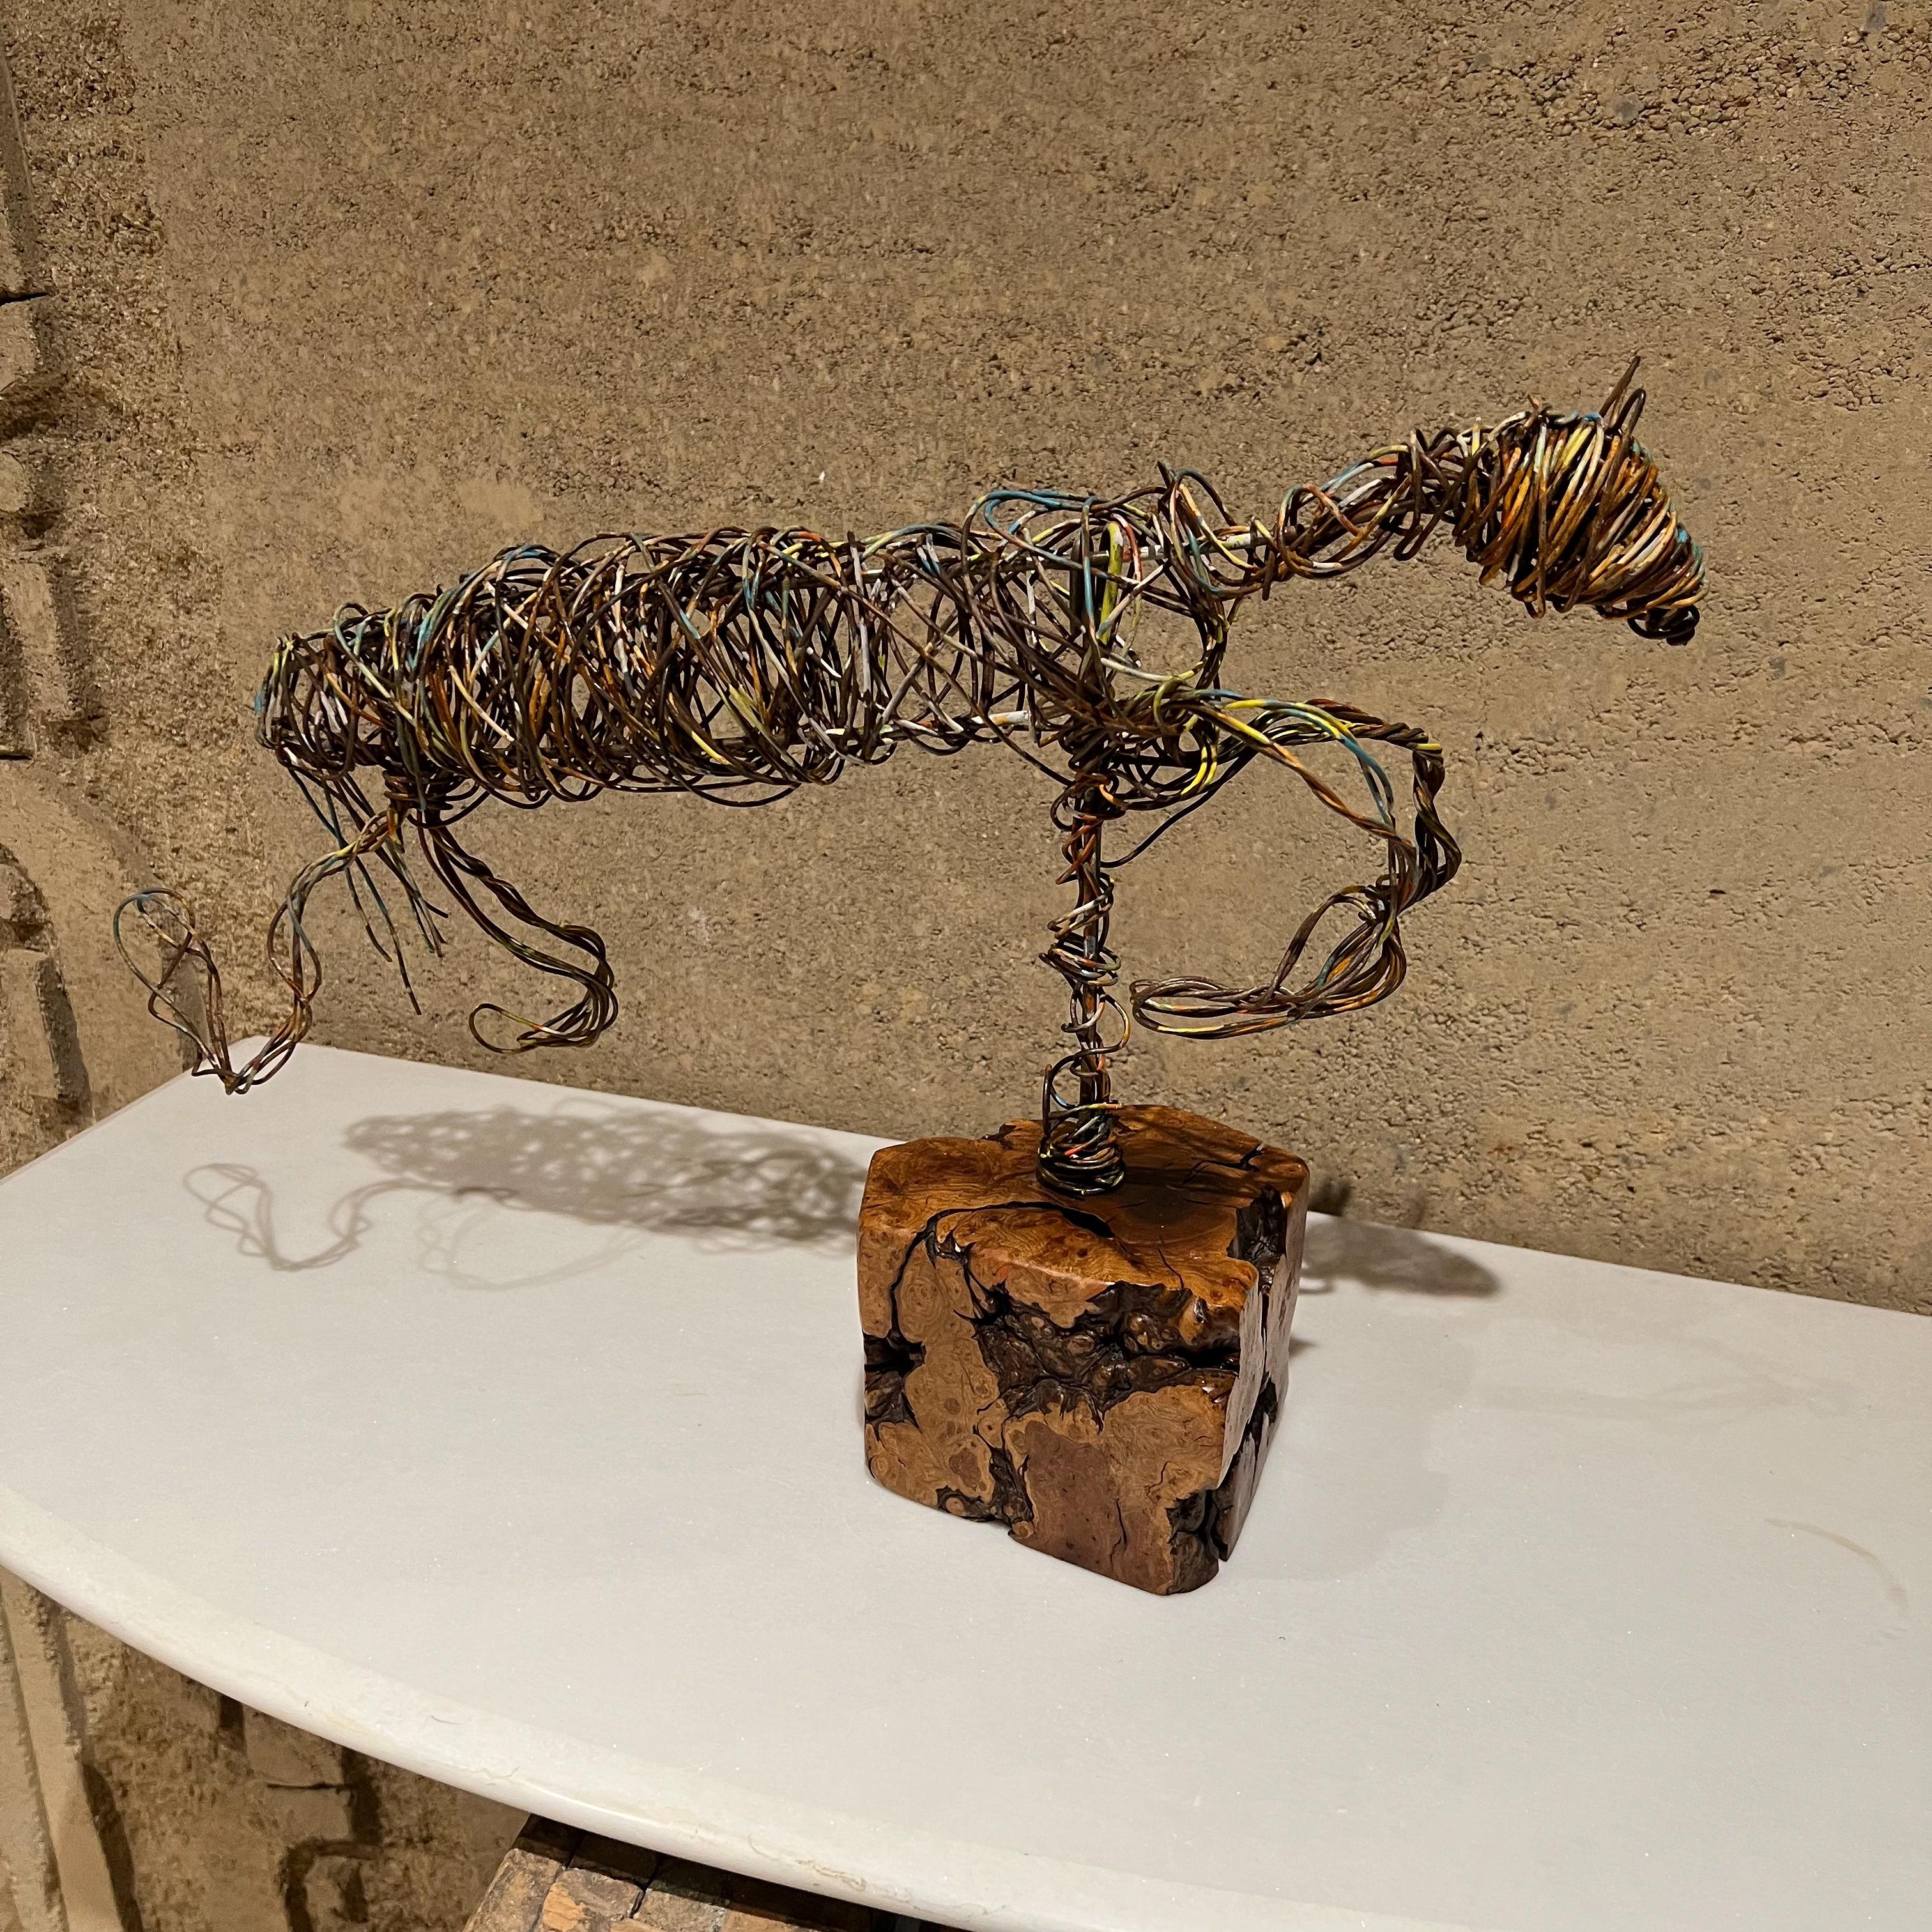 Sculpture
Sculpture de cheval en fil de fer d'art moderniste, peint, monté sur une base en bois exotique.
Dans le style de Marcello Fantoni pour Raymor
Mesures : 12.25 haut x 5 large x 18,5 long
État original d'occasion non restauré.